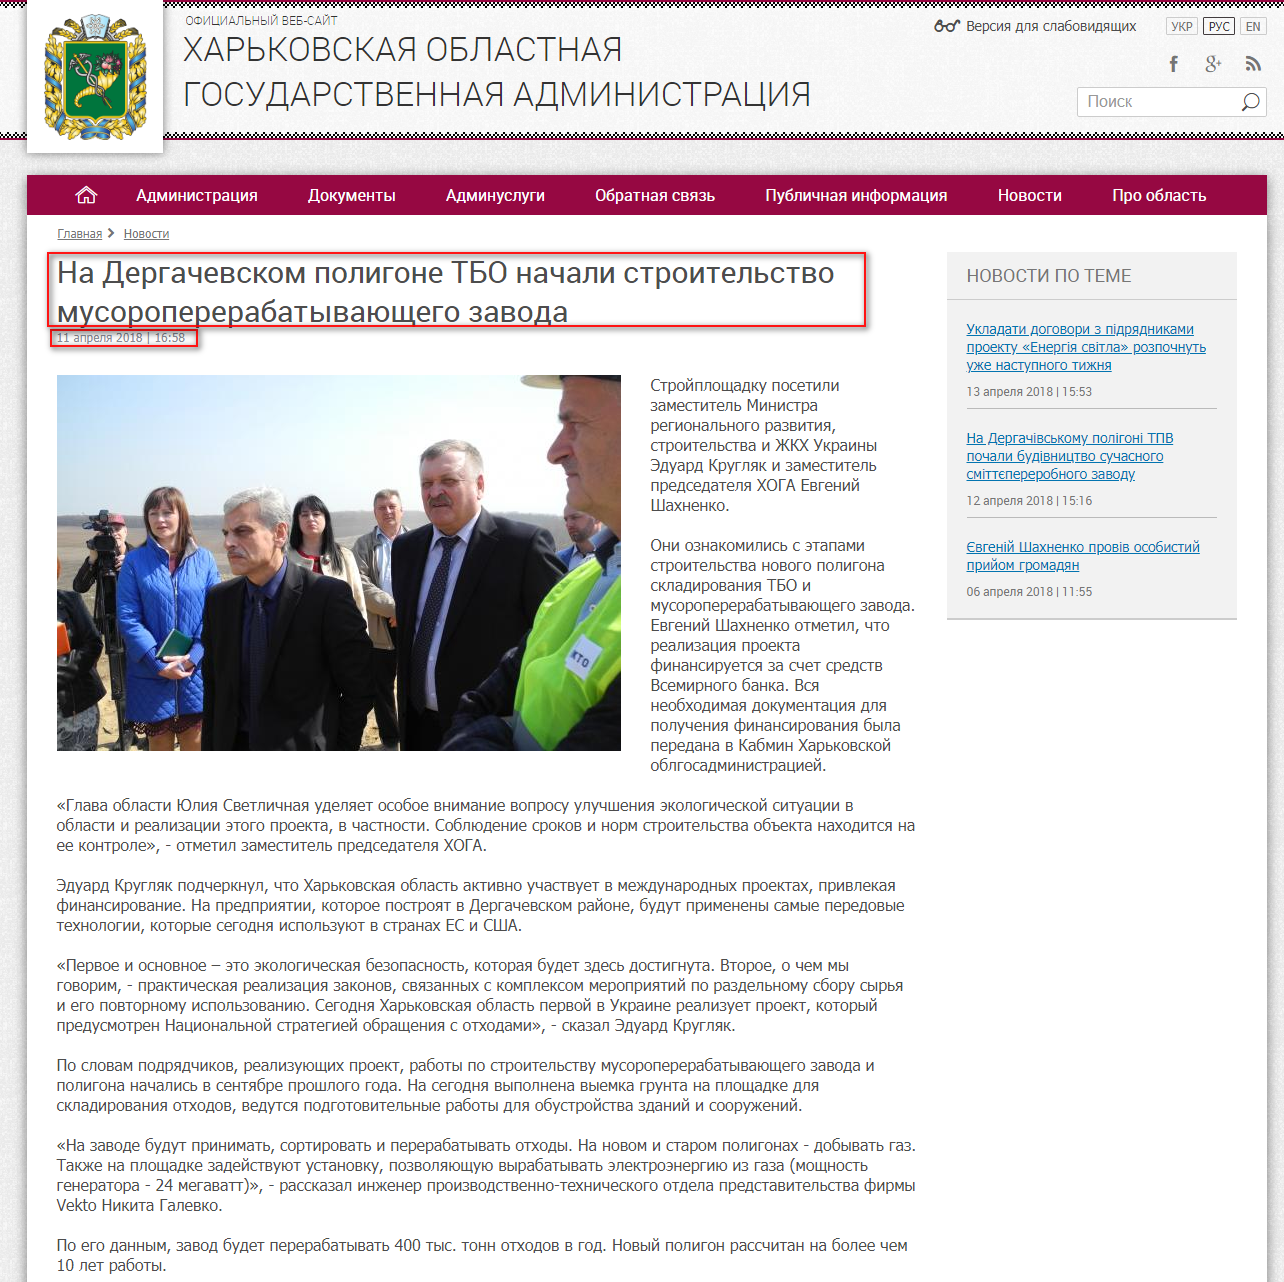 http://kharkivoda.gov.ua/ru/news/92220